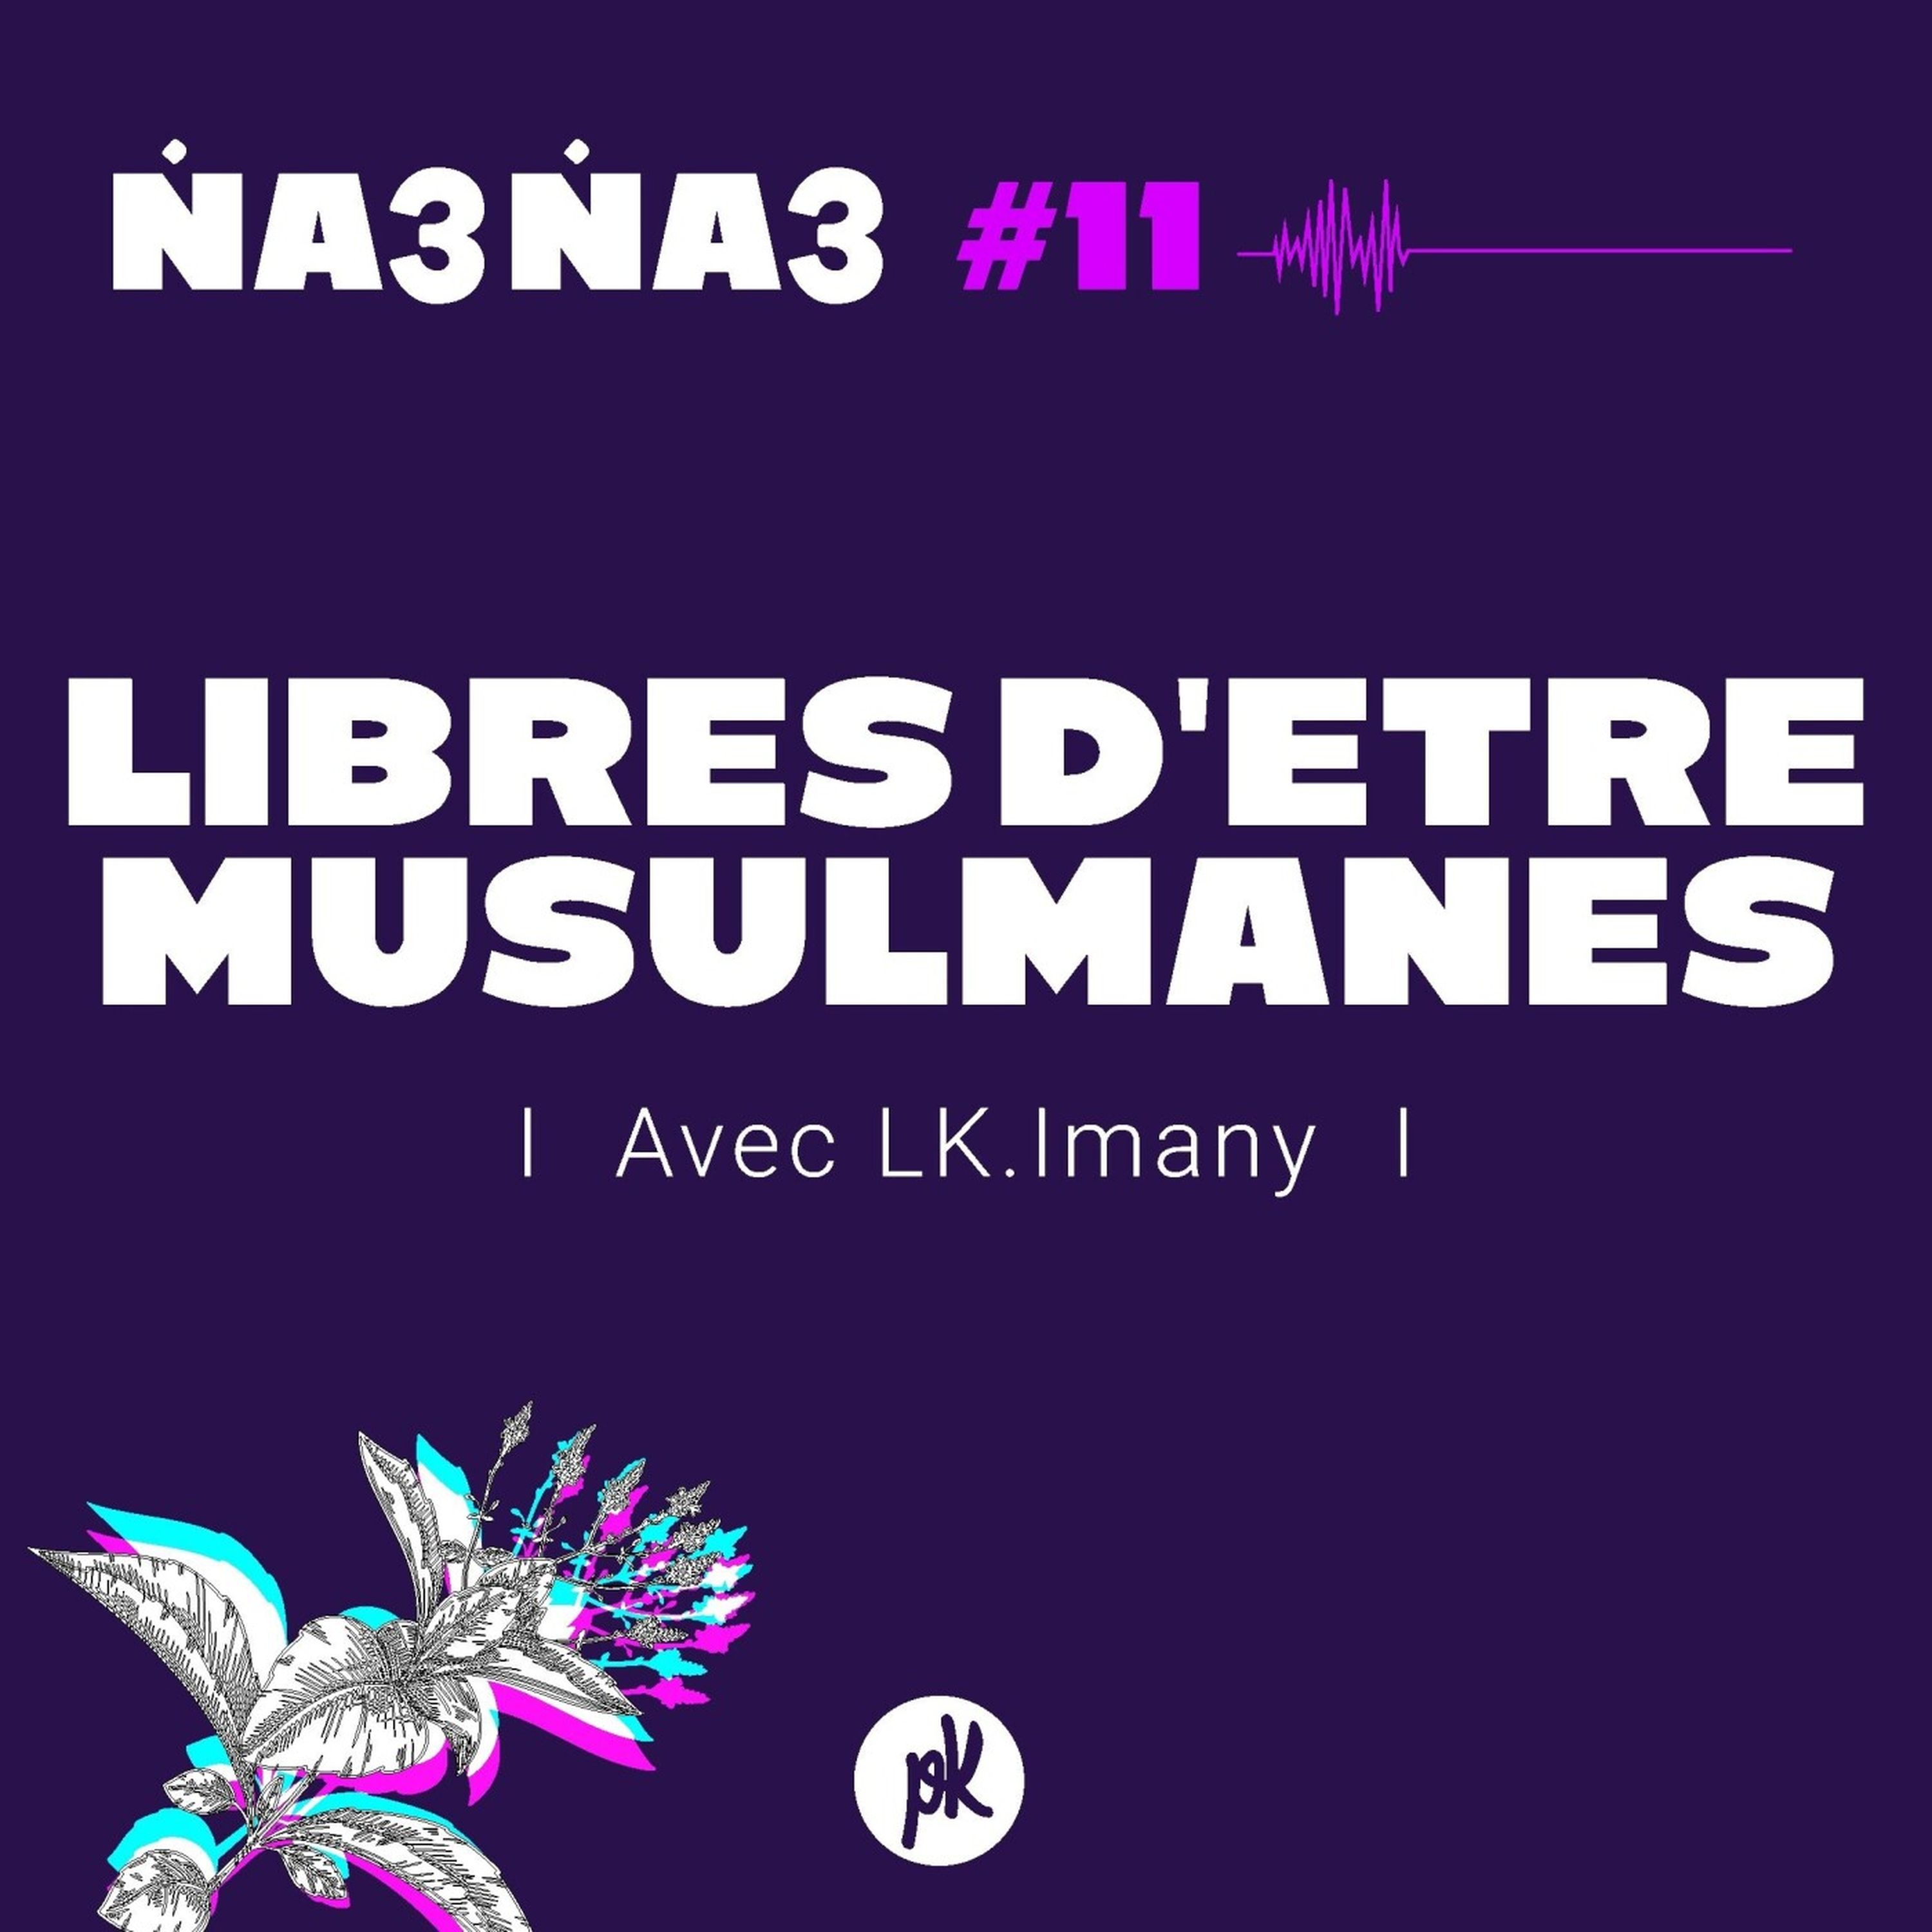 Na3na3 #11  - Libres d'être musulmanes (avec LK.Imany)